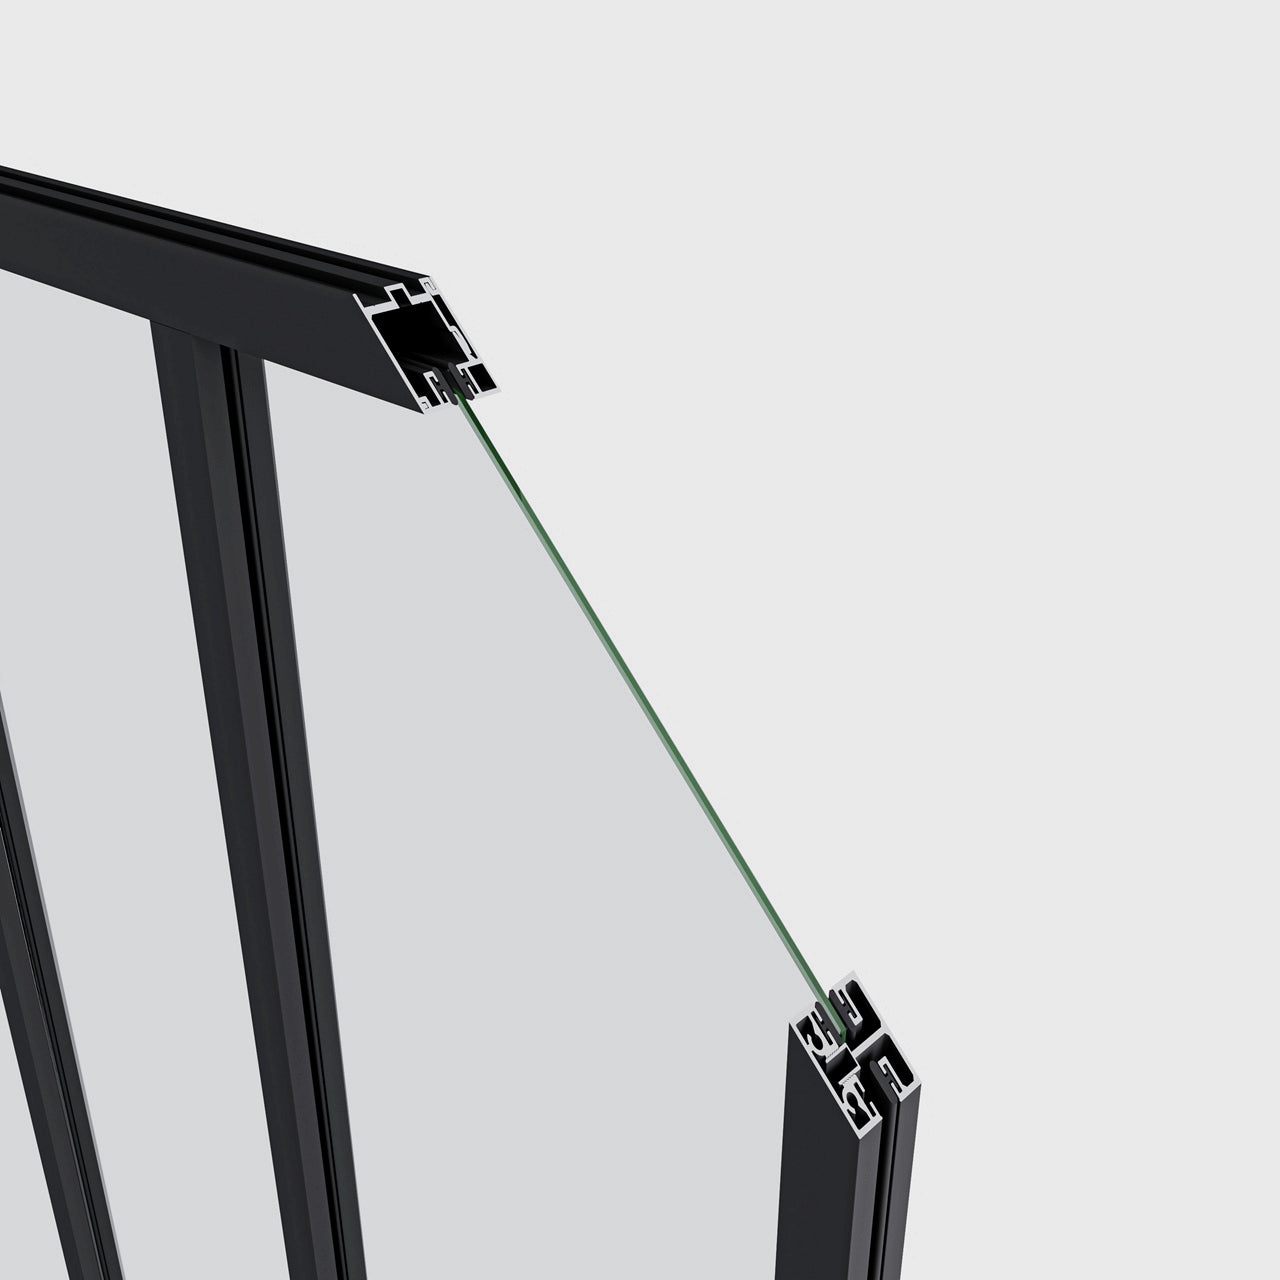 Cómo elegir e instalar el empaque correcto para un perfil de aluminio? 